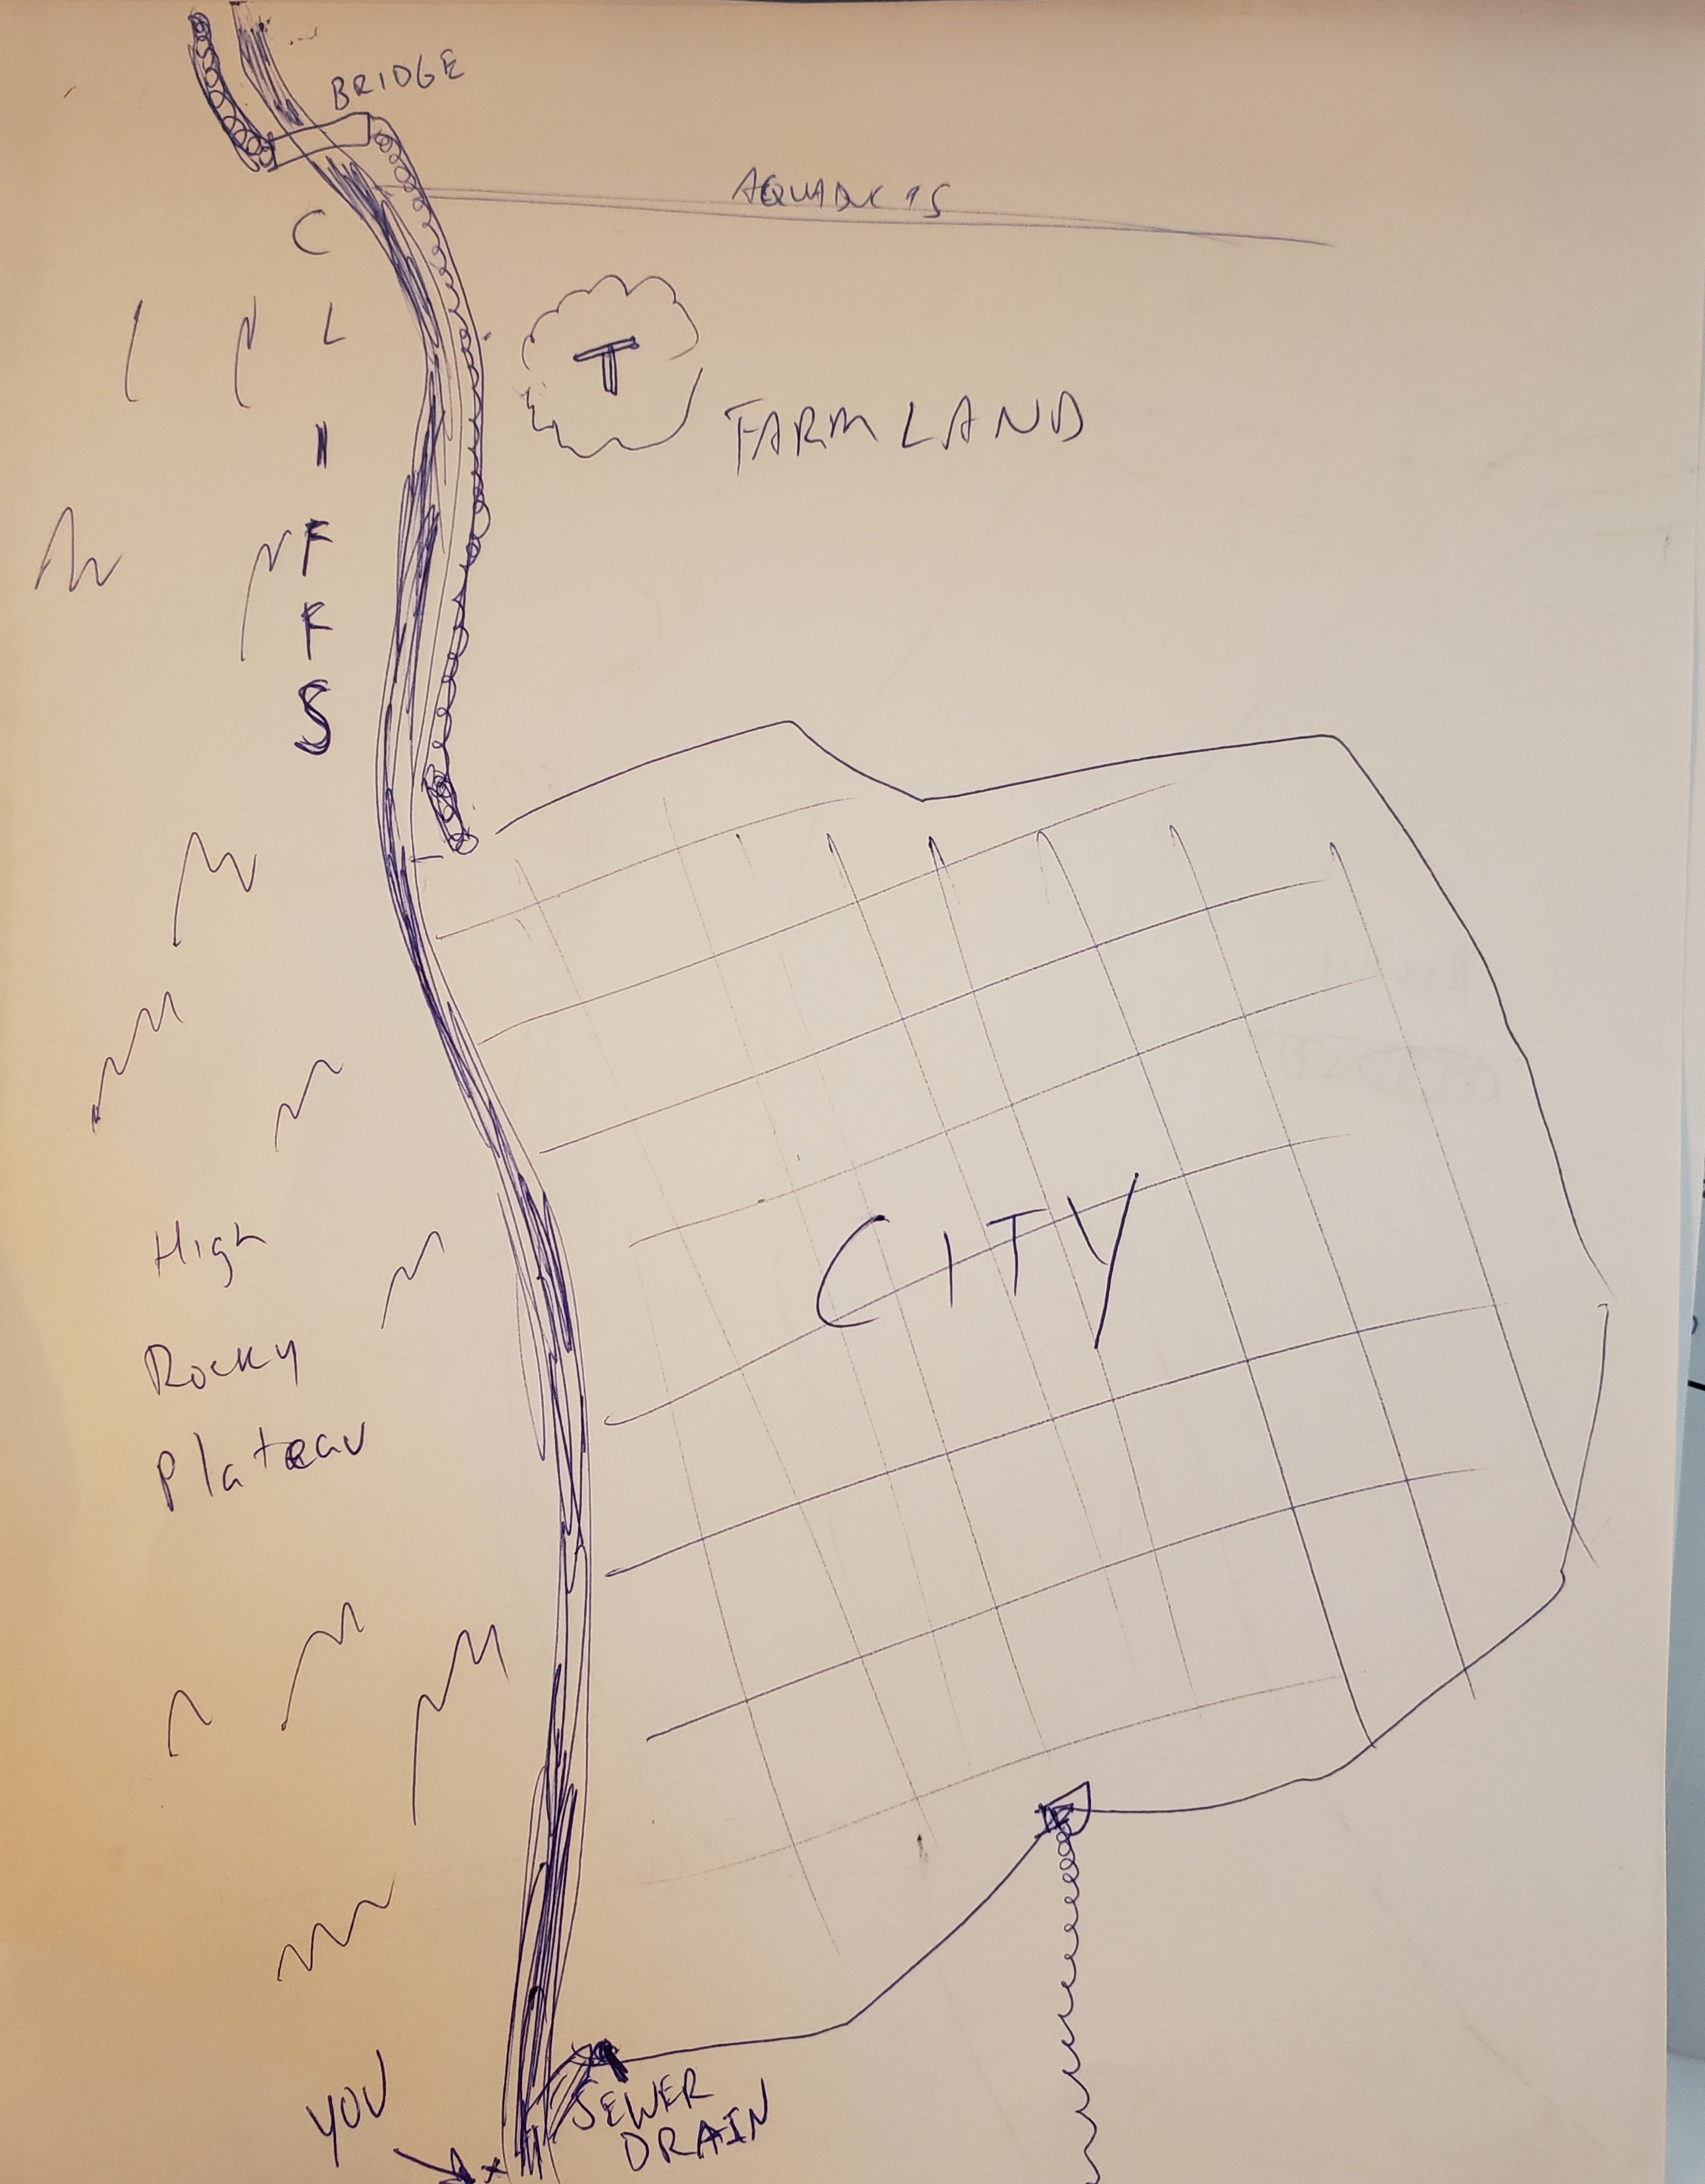 Chun-ki-city-layout.jpg